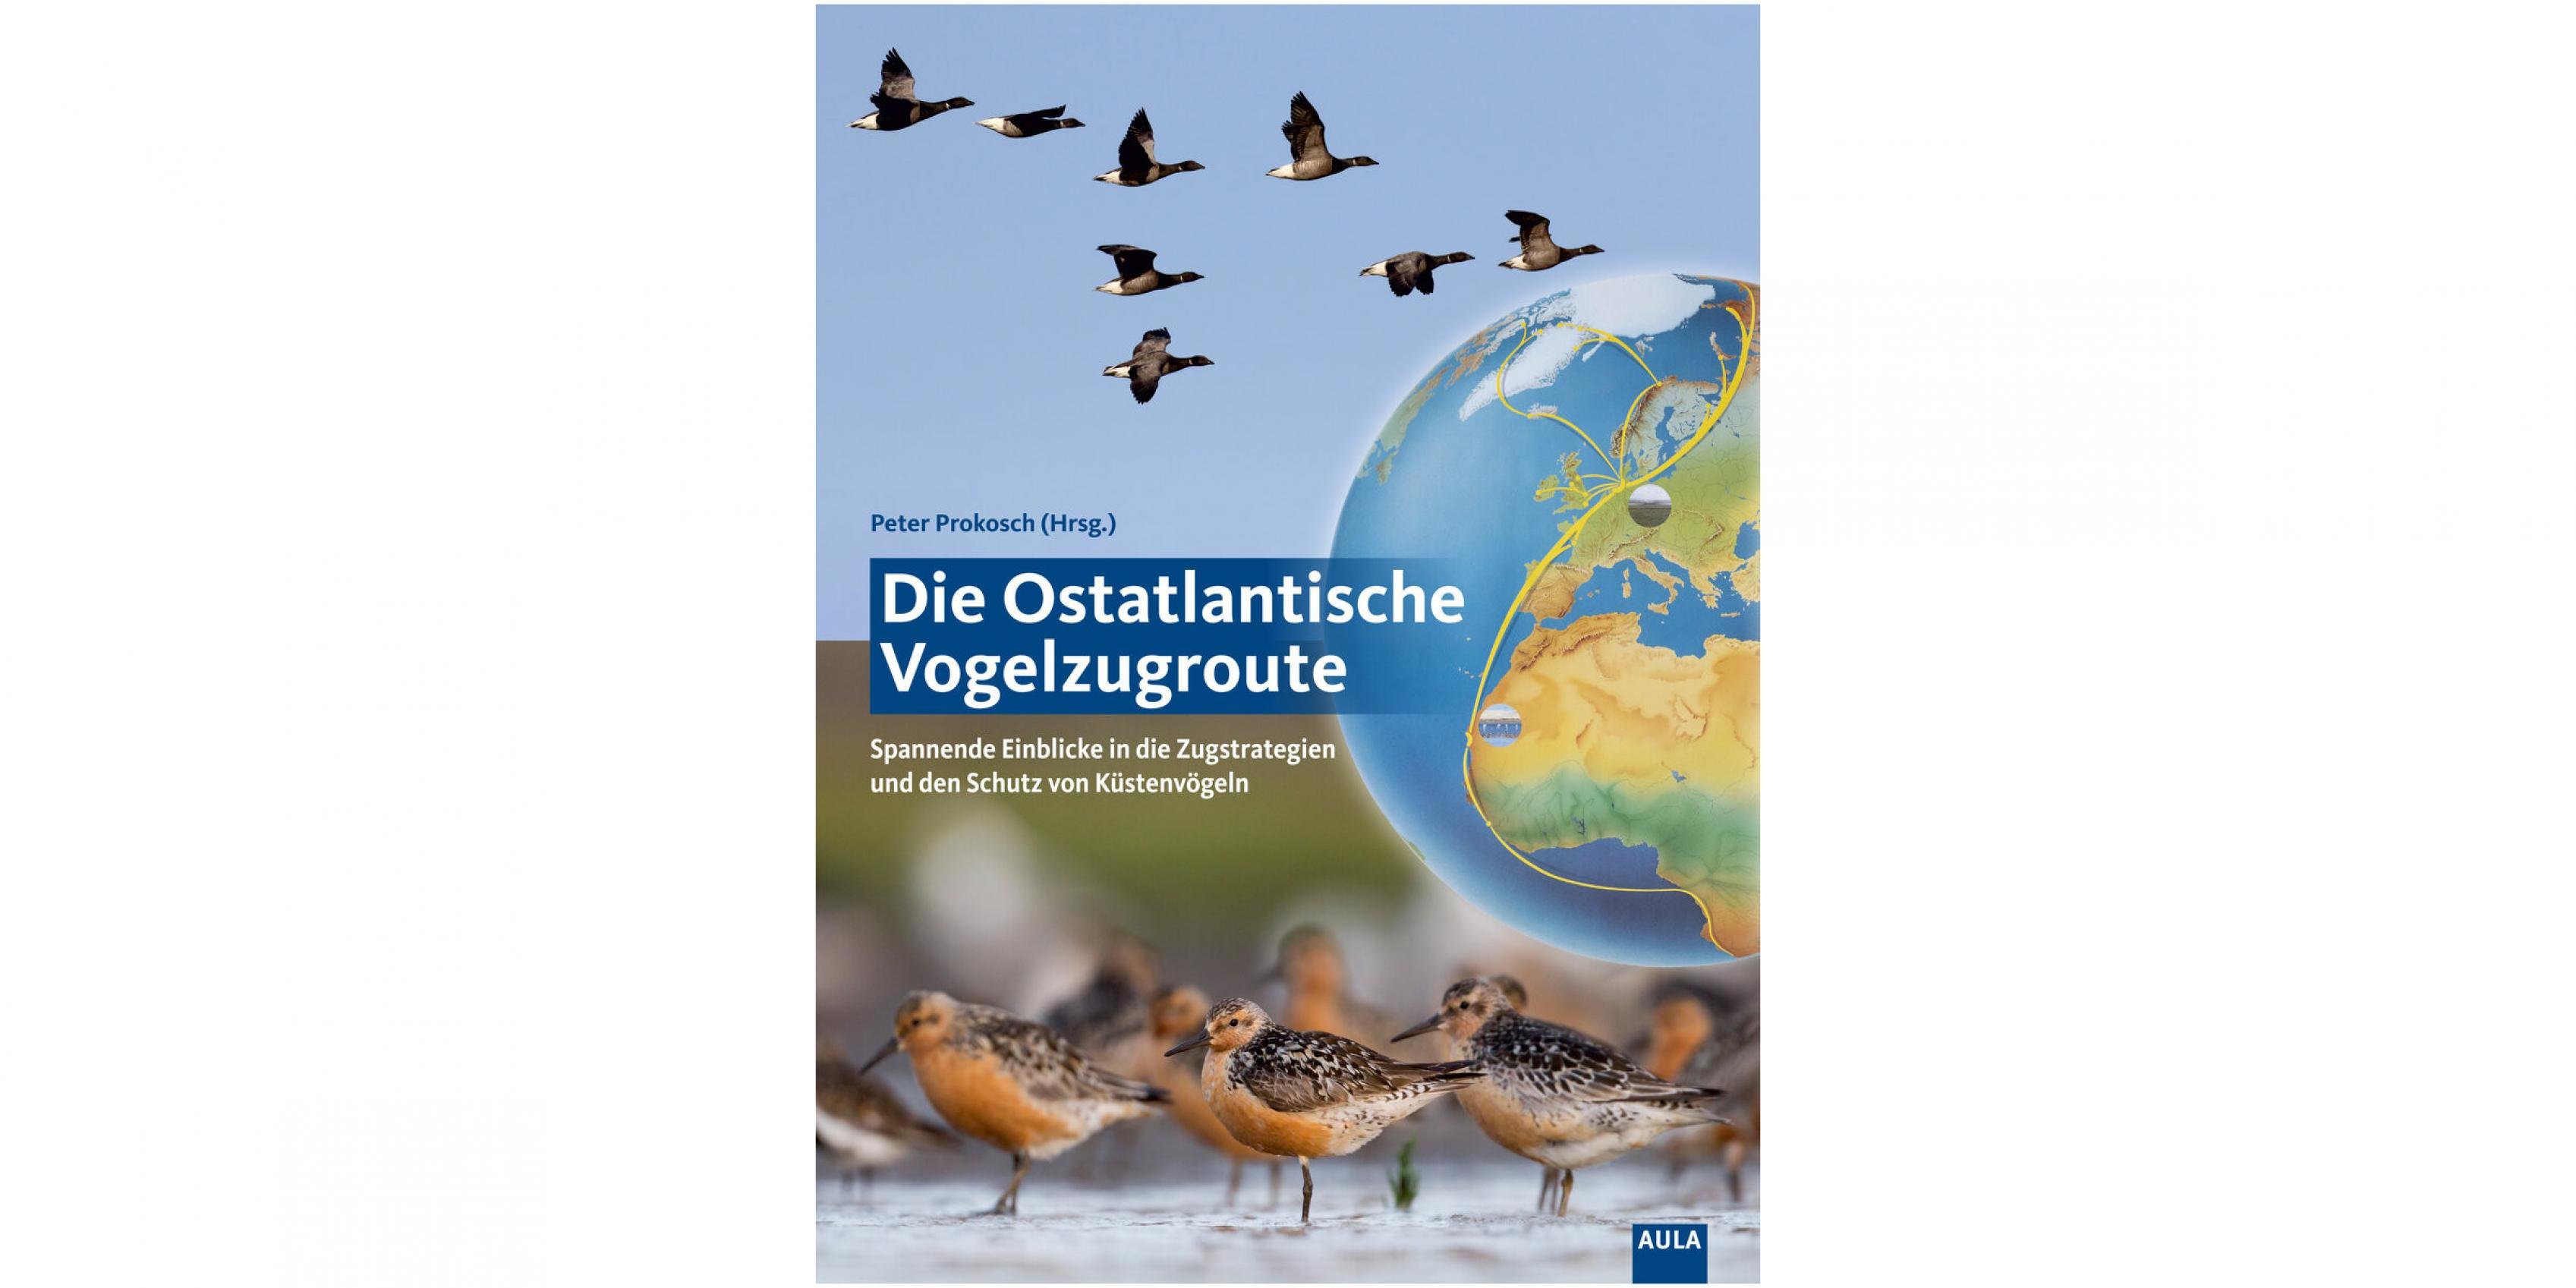 Das Cover des Buchs „Ostatlantische Vogelzugroute“ ist zusammengesetzt aus einem Globus mit Zugrouten und zwei Vogelfotos mit fliegenden Gänsen und Watvögeln.